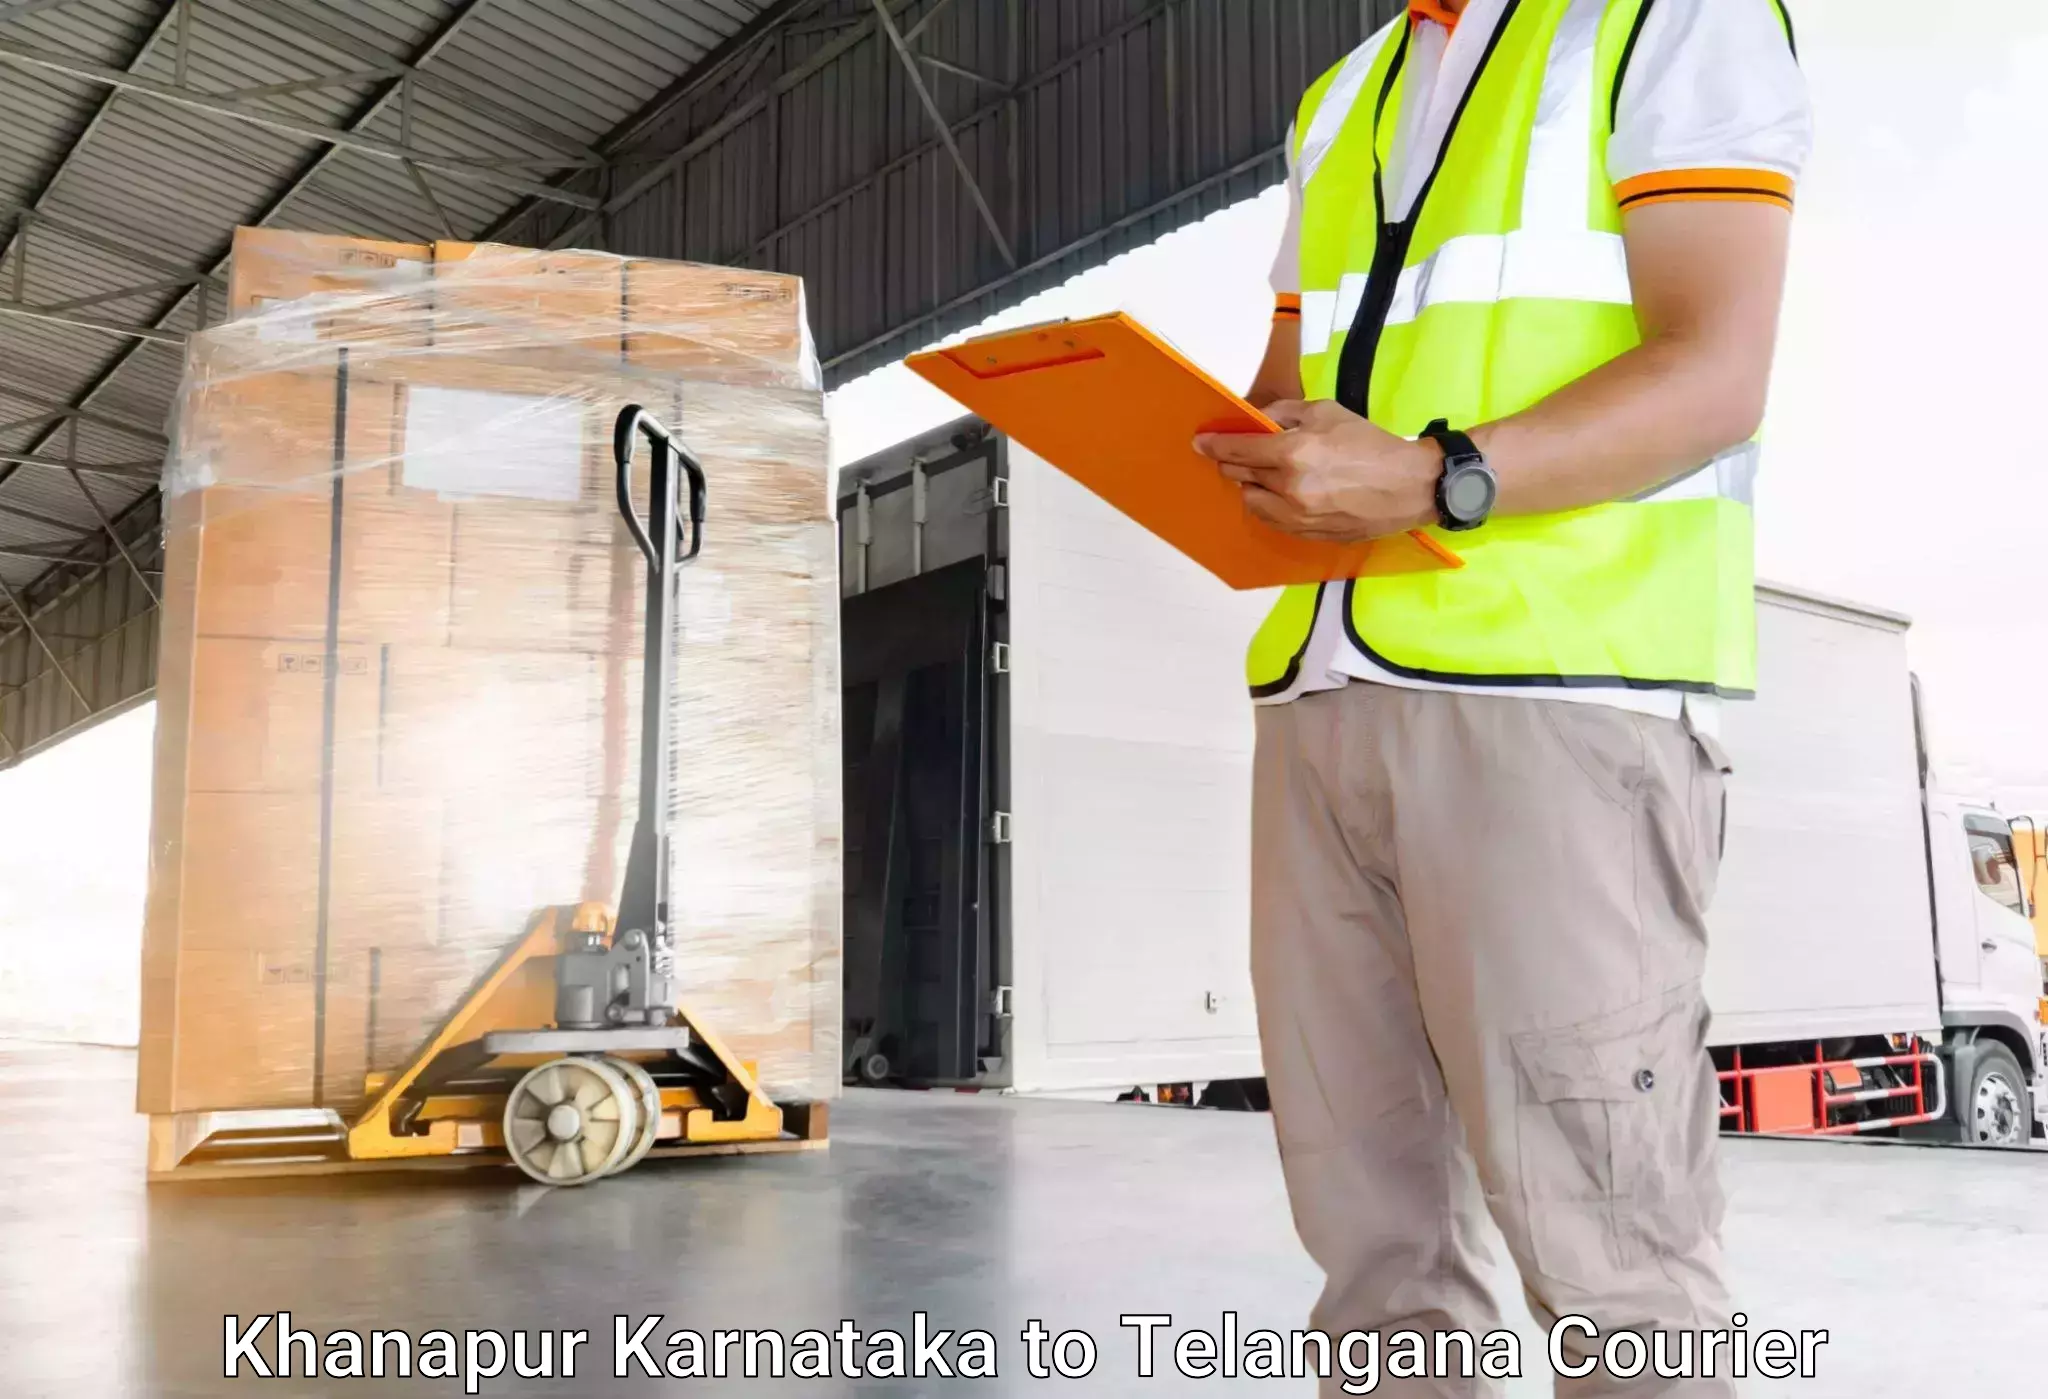 Domestic luggage transport Khanapur Karnataka to Jogulamba Gadwal